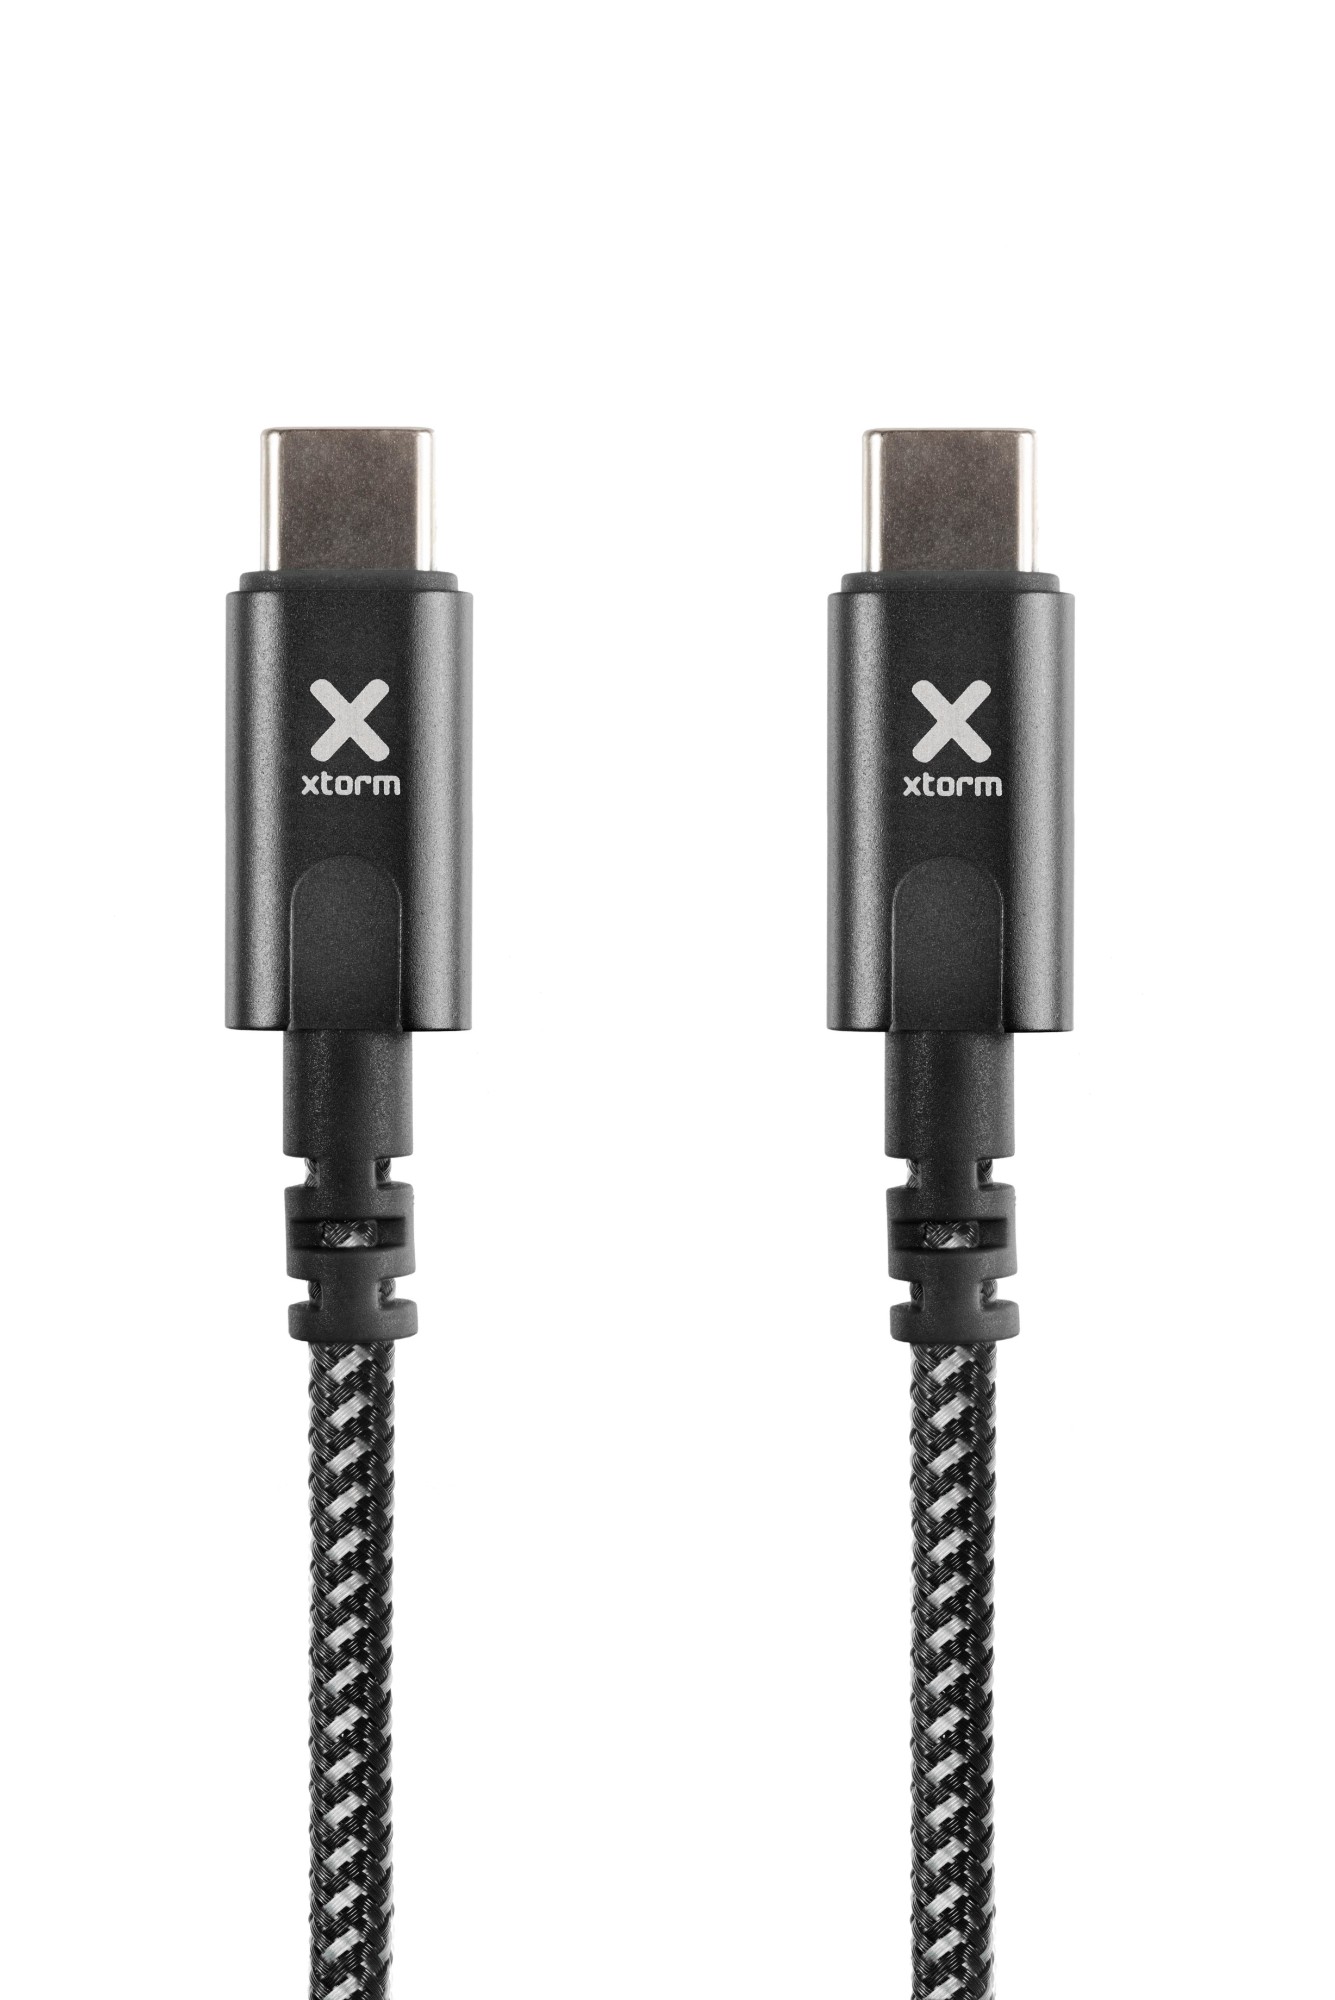 Photos - Cable (video, audio, USB) Xtorm Original USB-C PD cable (1m) Black CX2071 